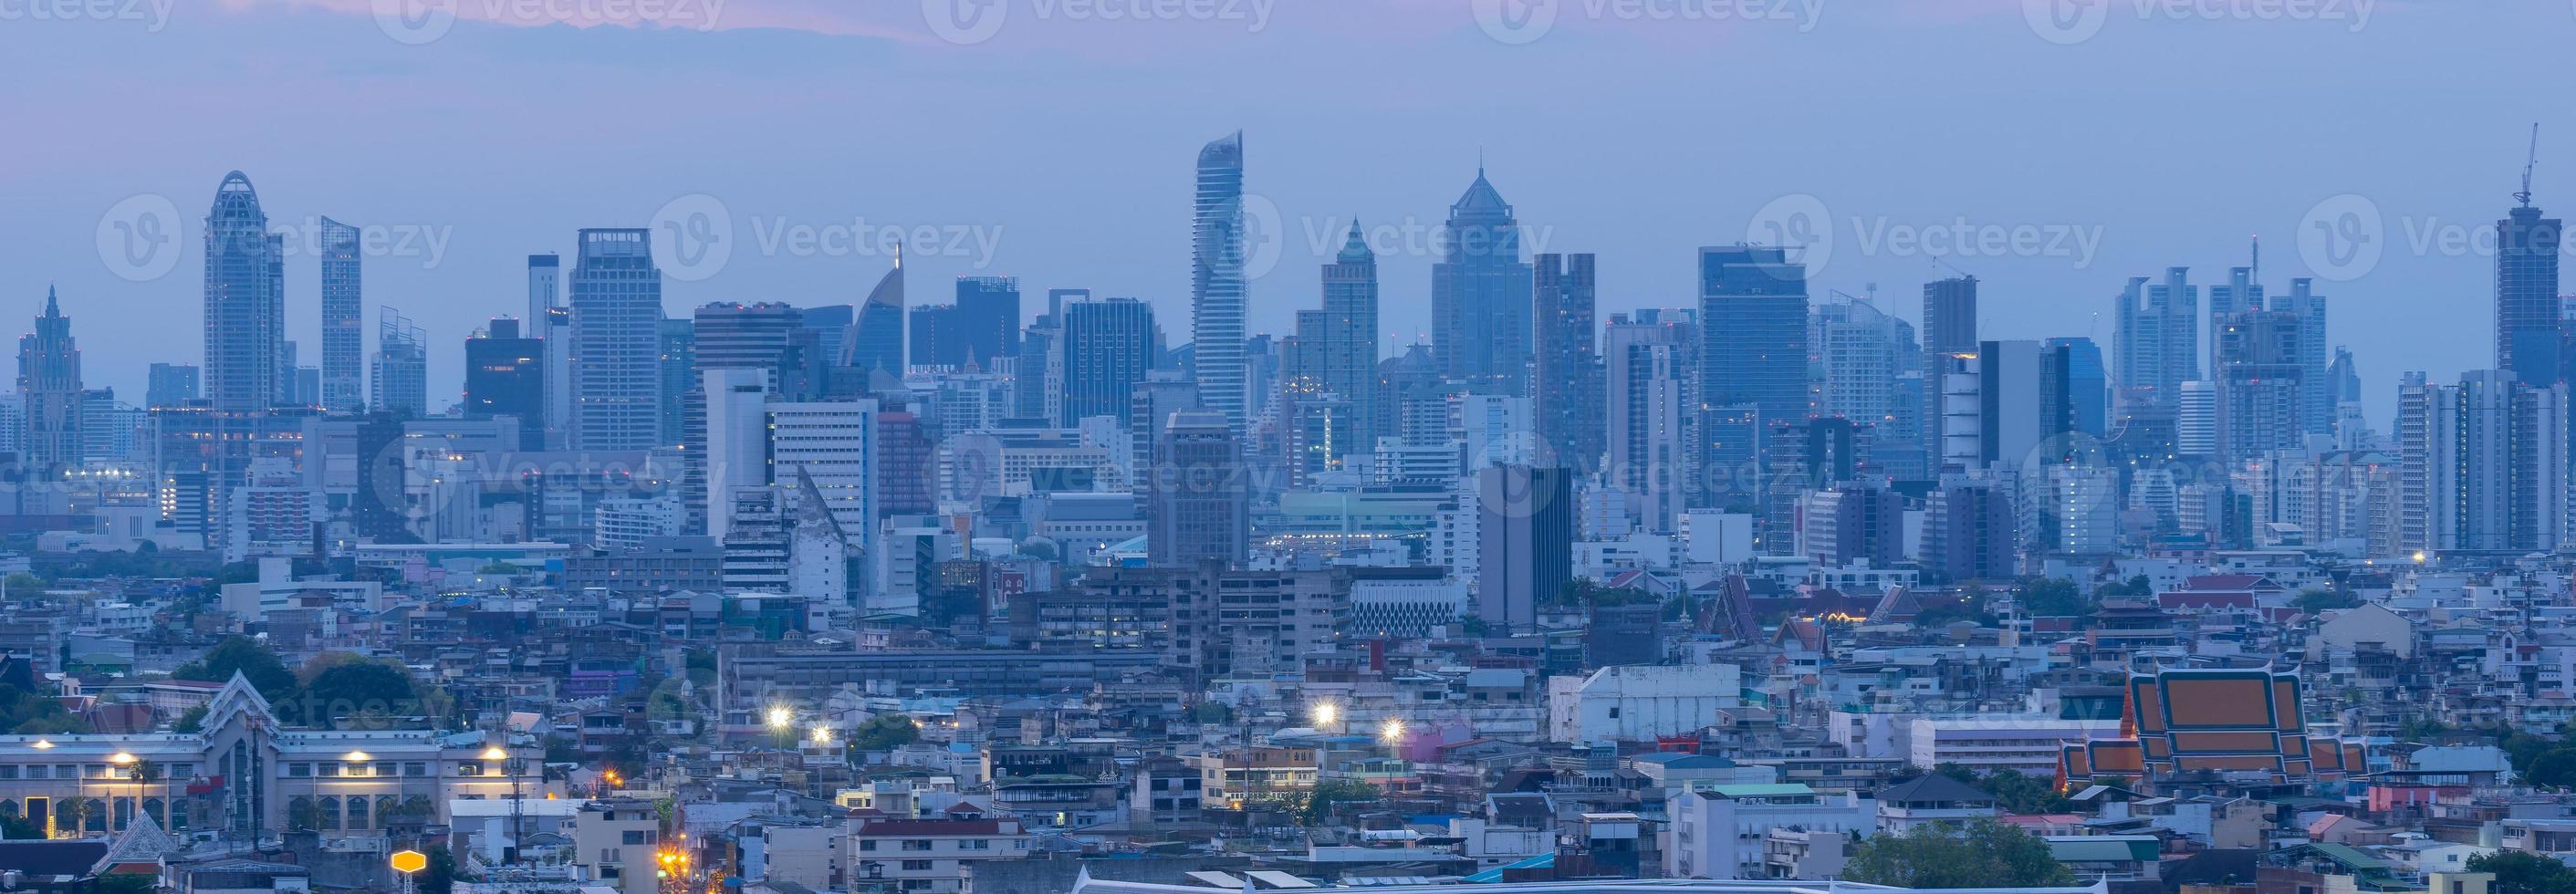 hoogbouw kantoorgebouw het centrum van bangkok. bij zonsopgang is het licht uit de lucht blauw. foto